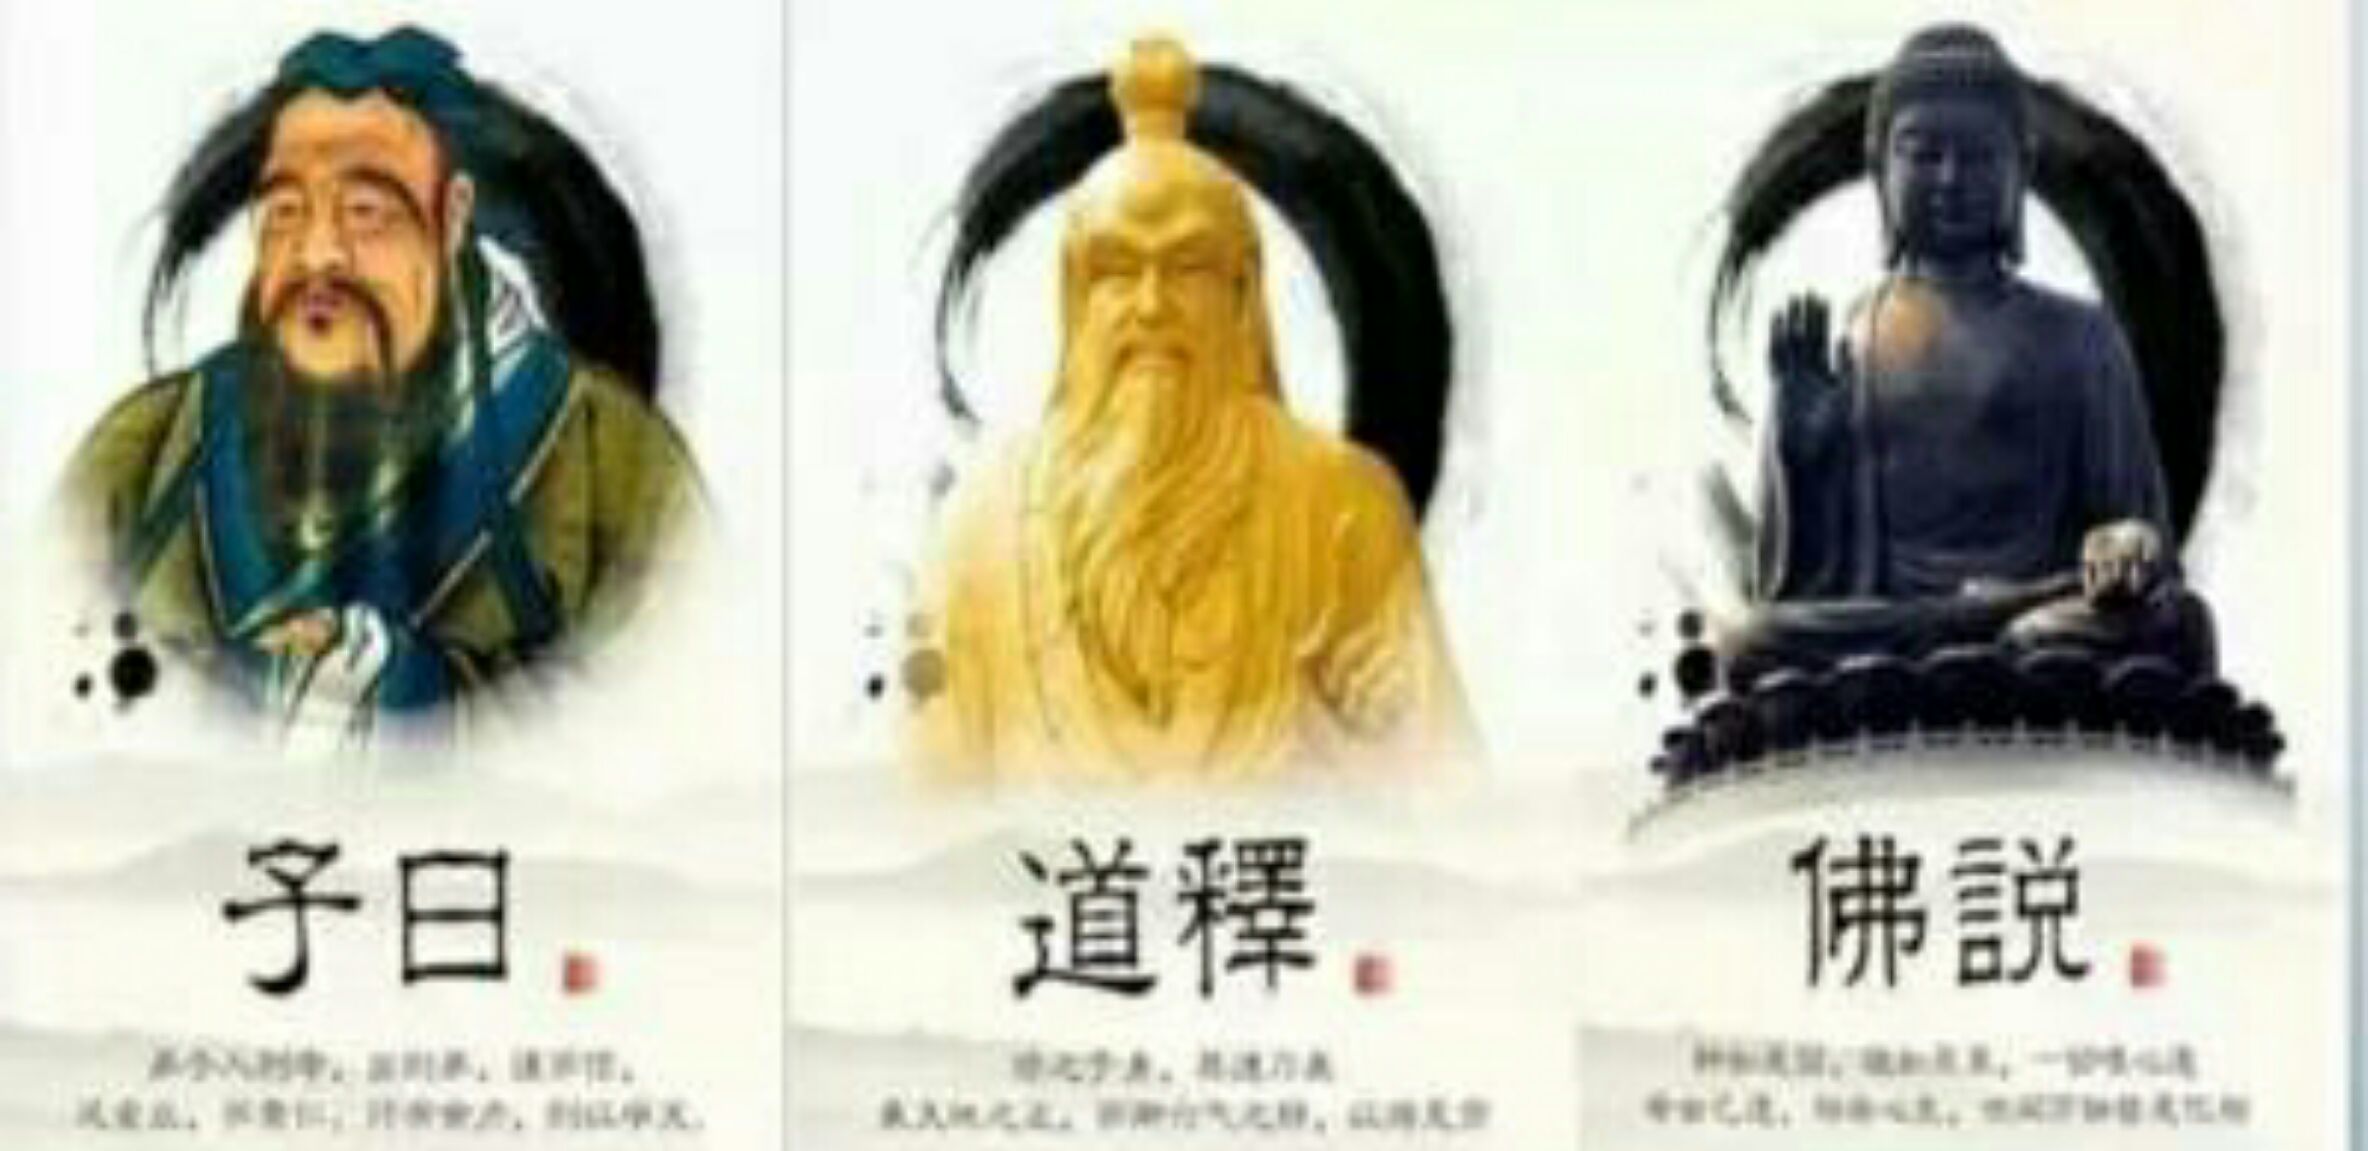 视频中所介绍的佛家思想的宗旨是什么 楼宇烈: “独尊儒术”恰恰遮蔽了中华文化发展的真正动因 | 文化纵横